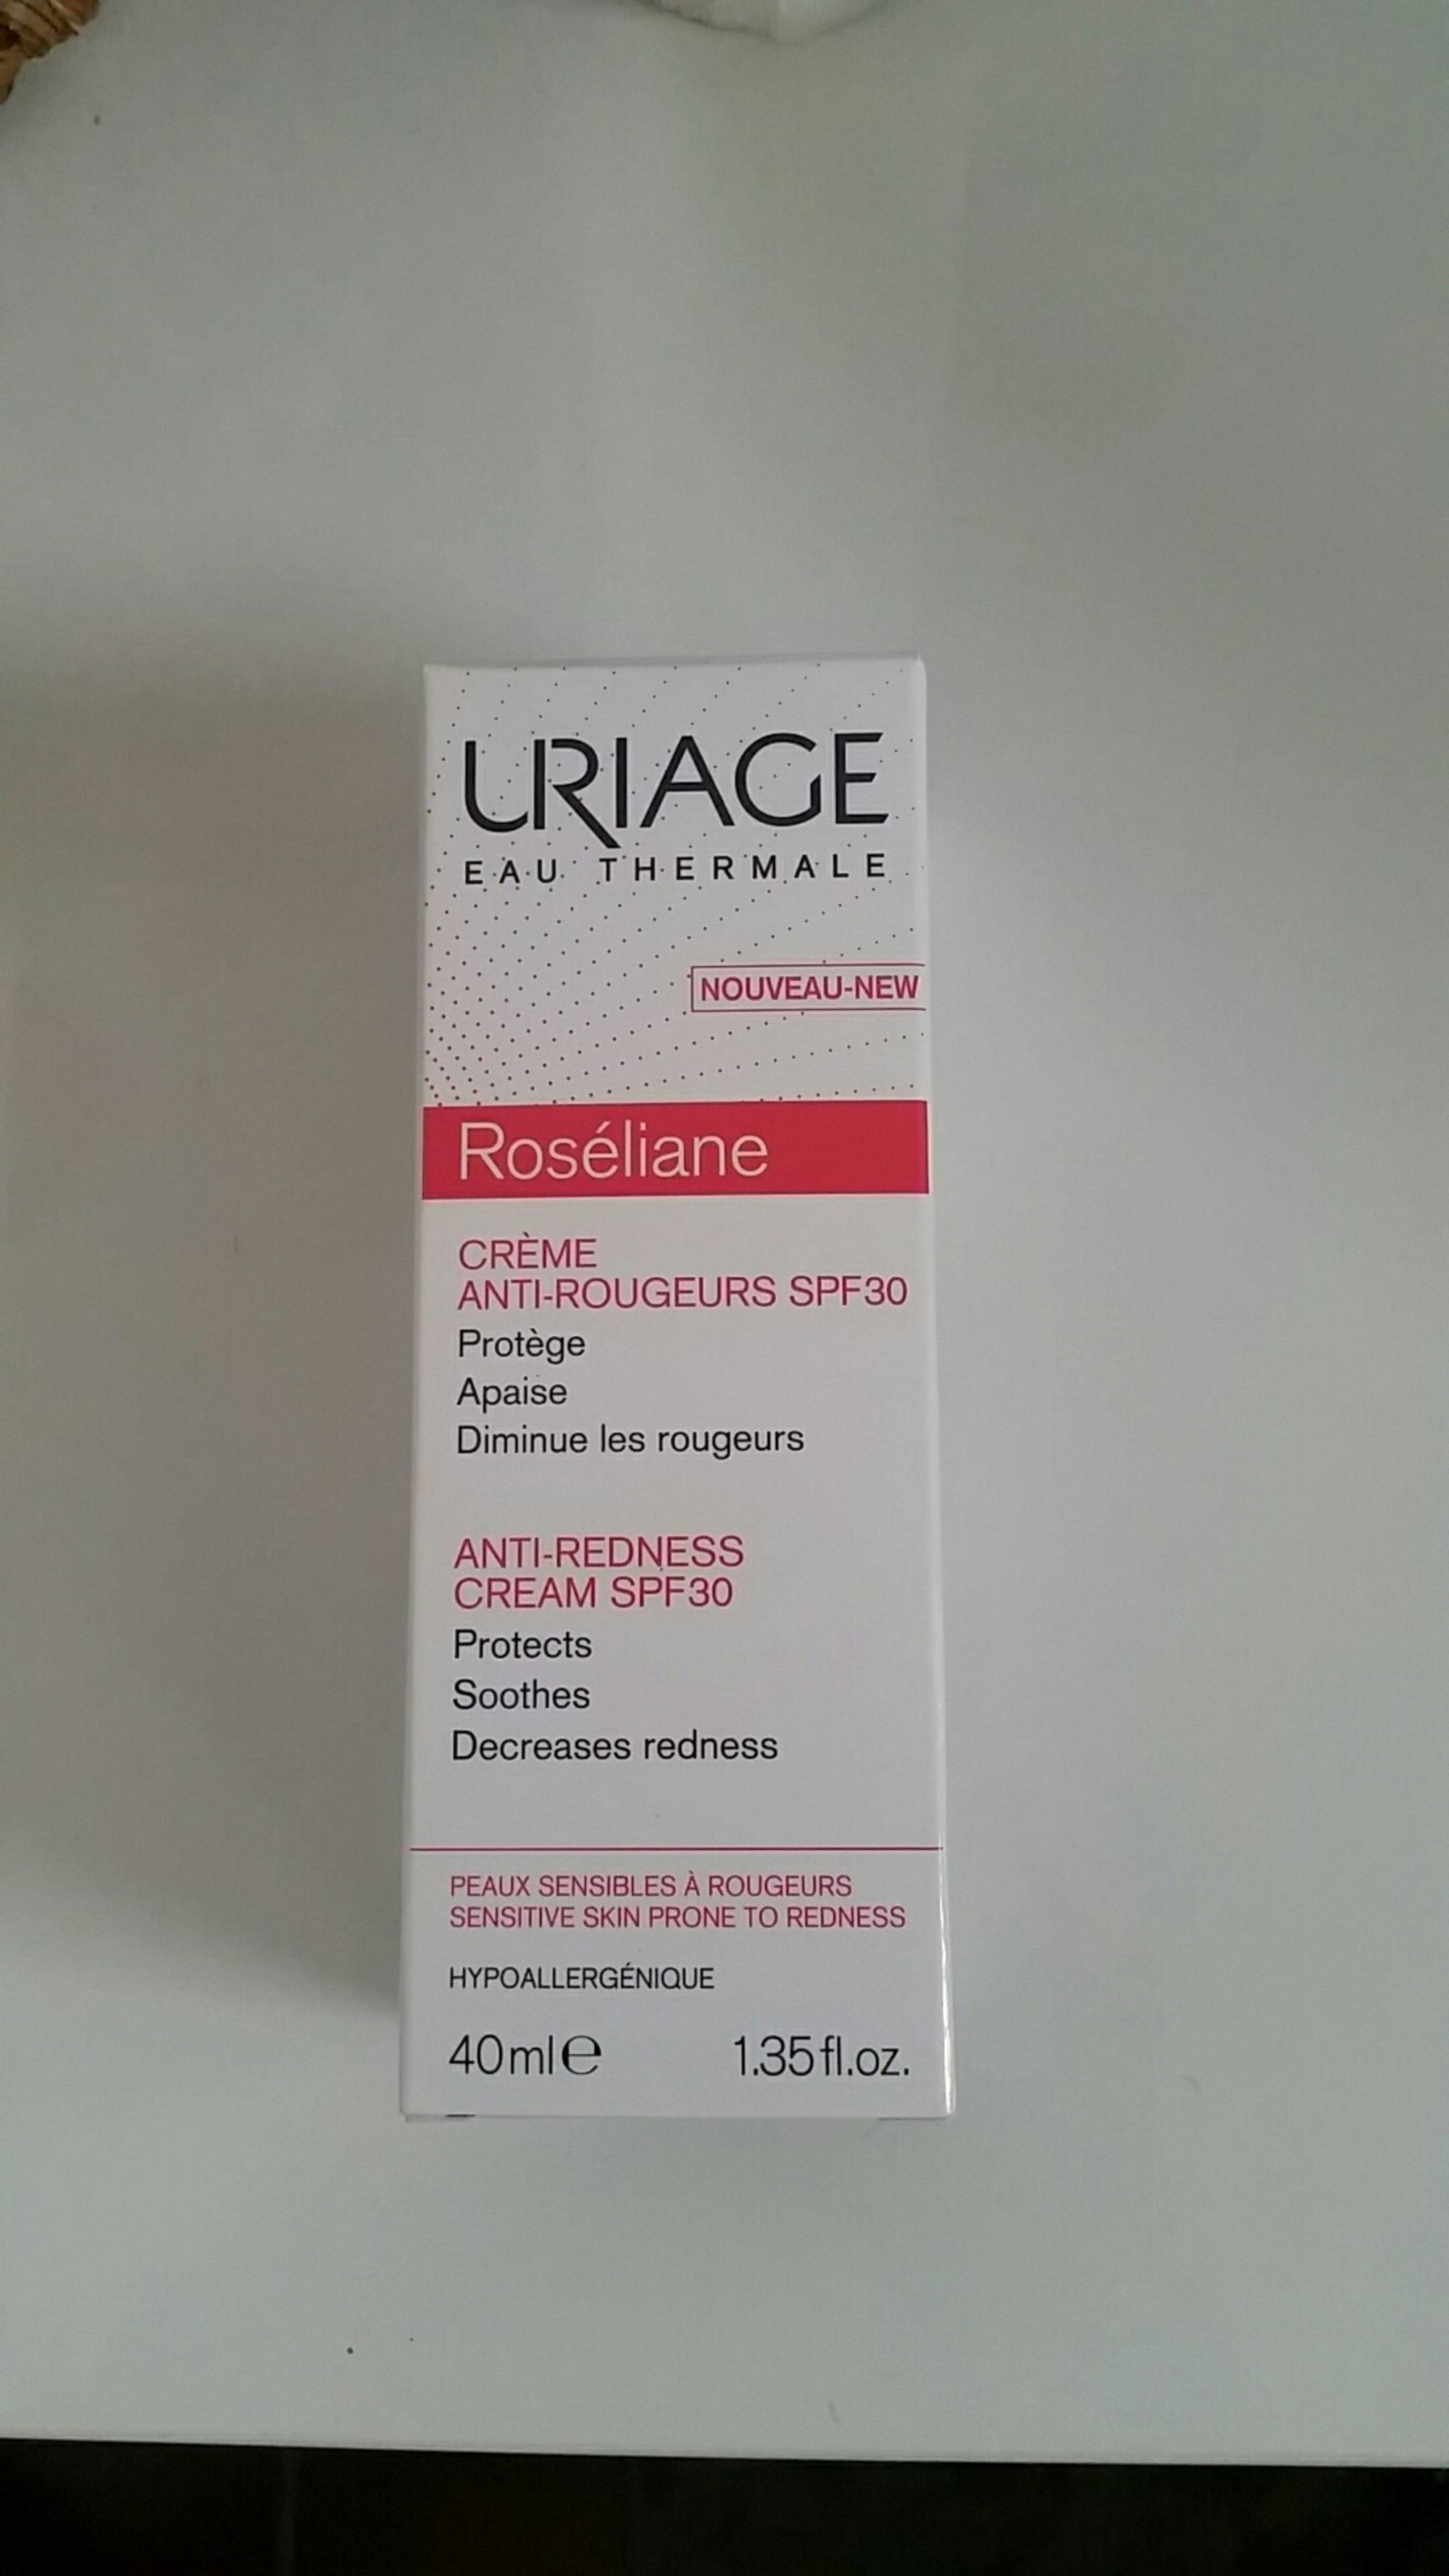 URIAGE - Roséliane - Crème anti-rougeurs SPF30